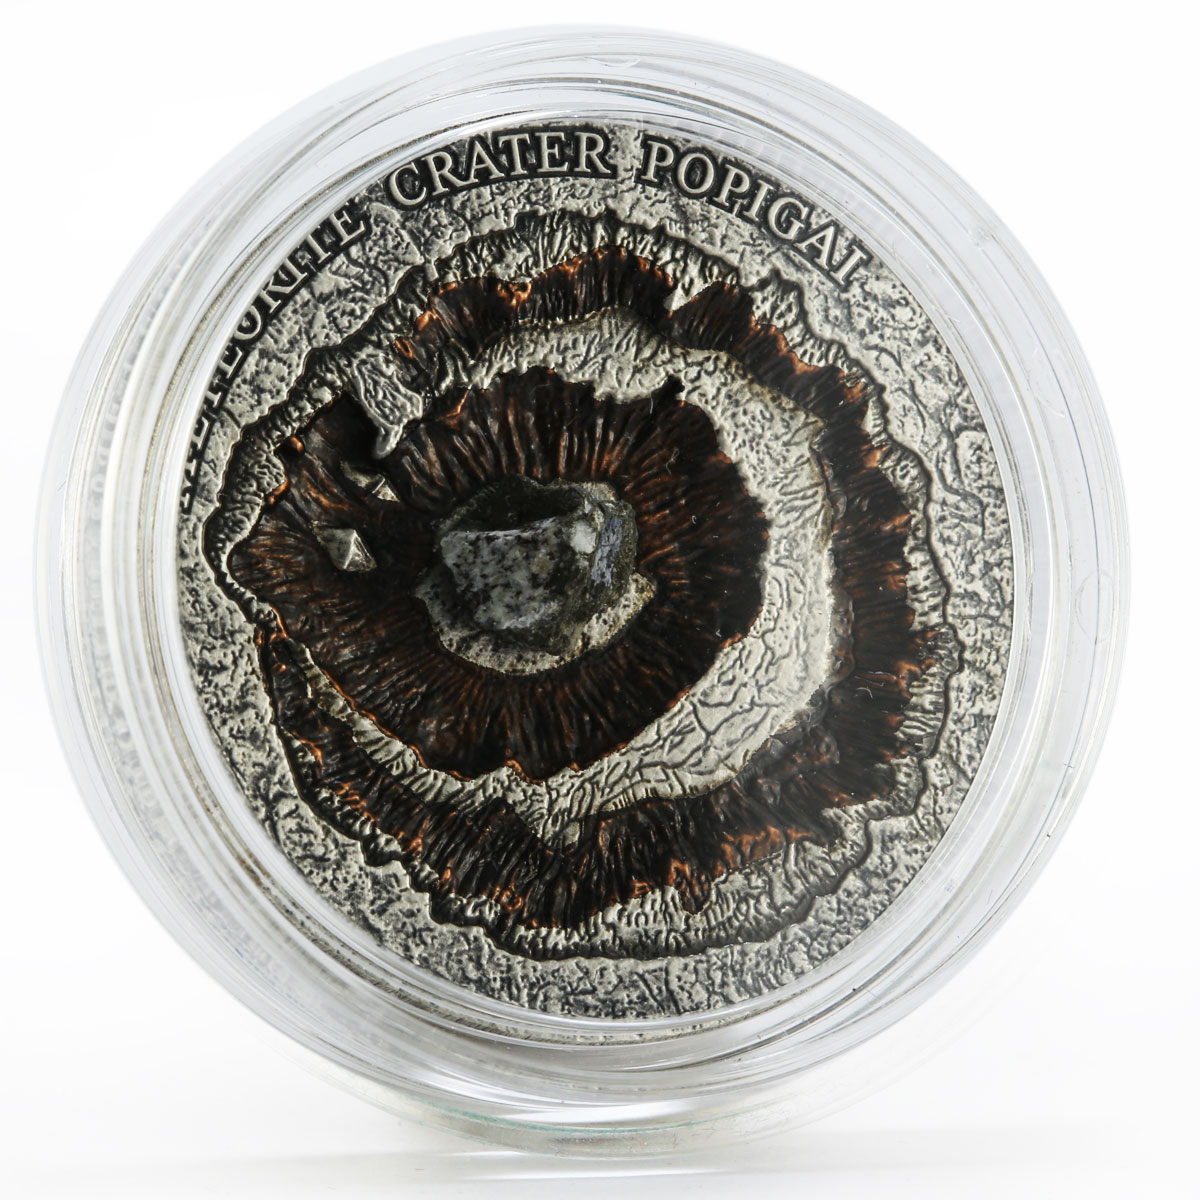 Niue 1 dollar Meteorite Craters series Meteorite Popigai Crater silver coin 2016